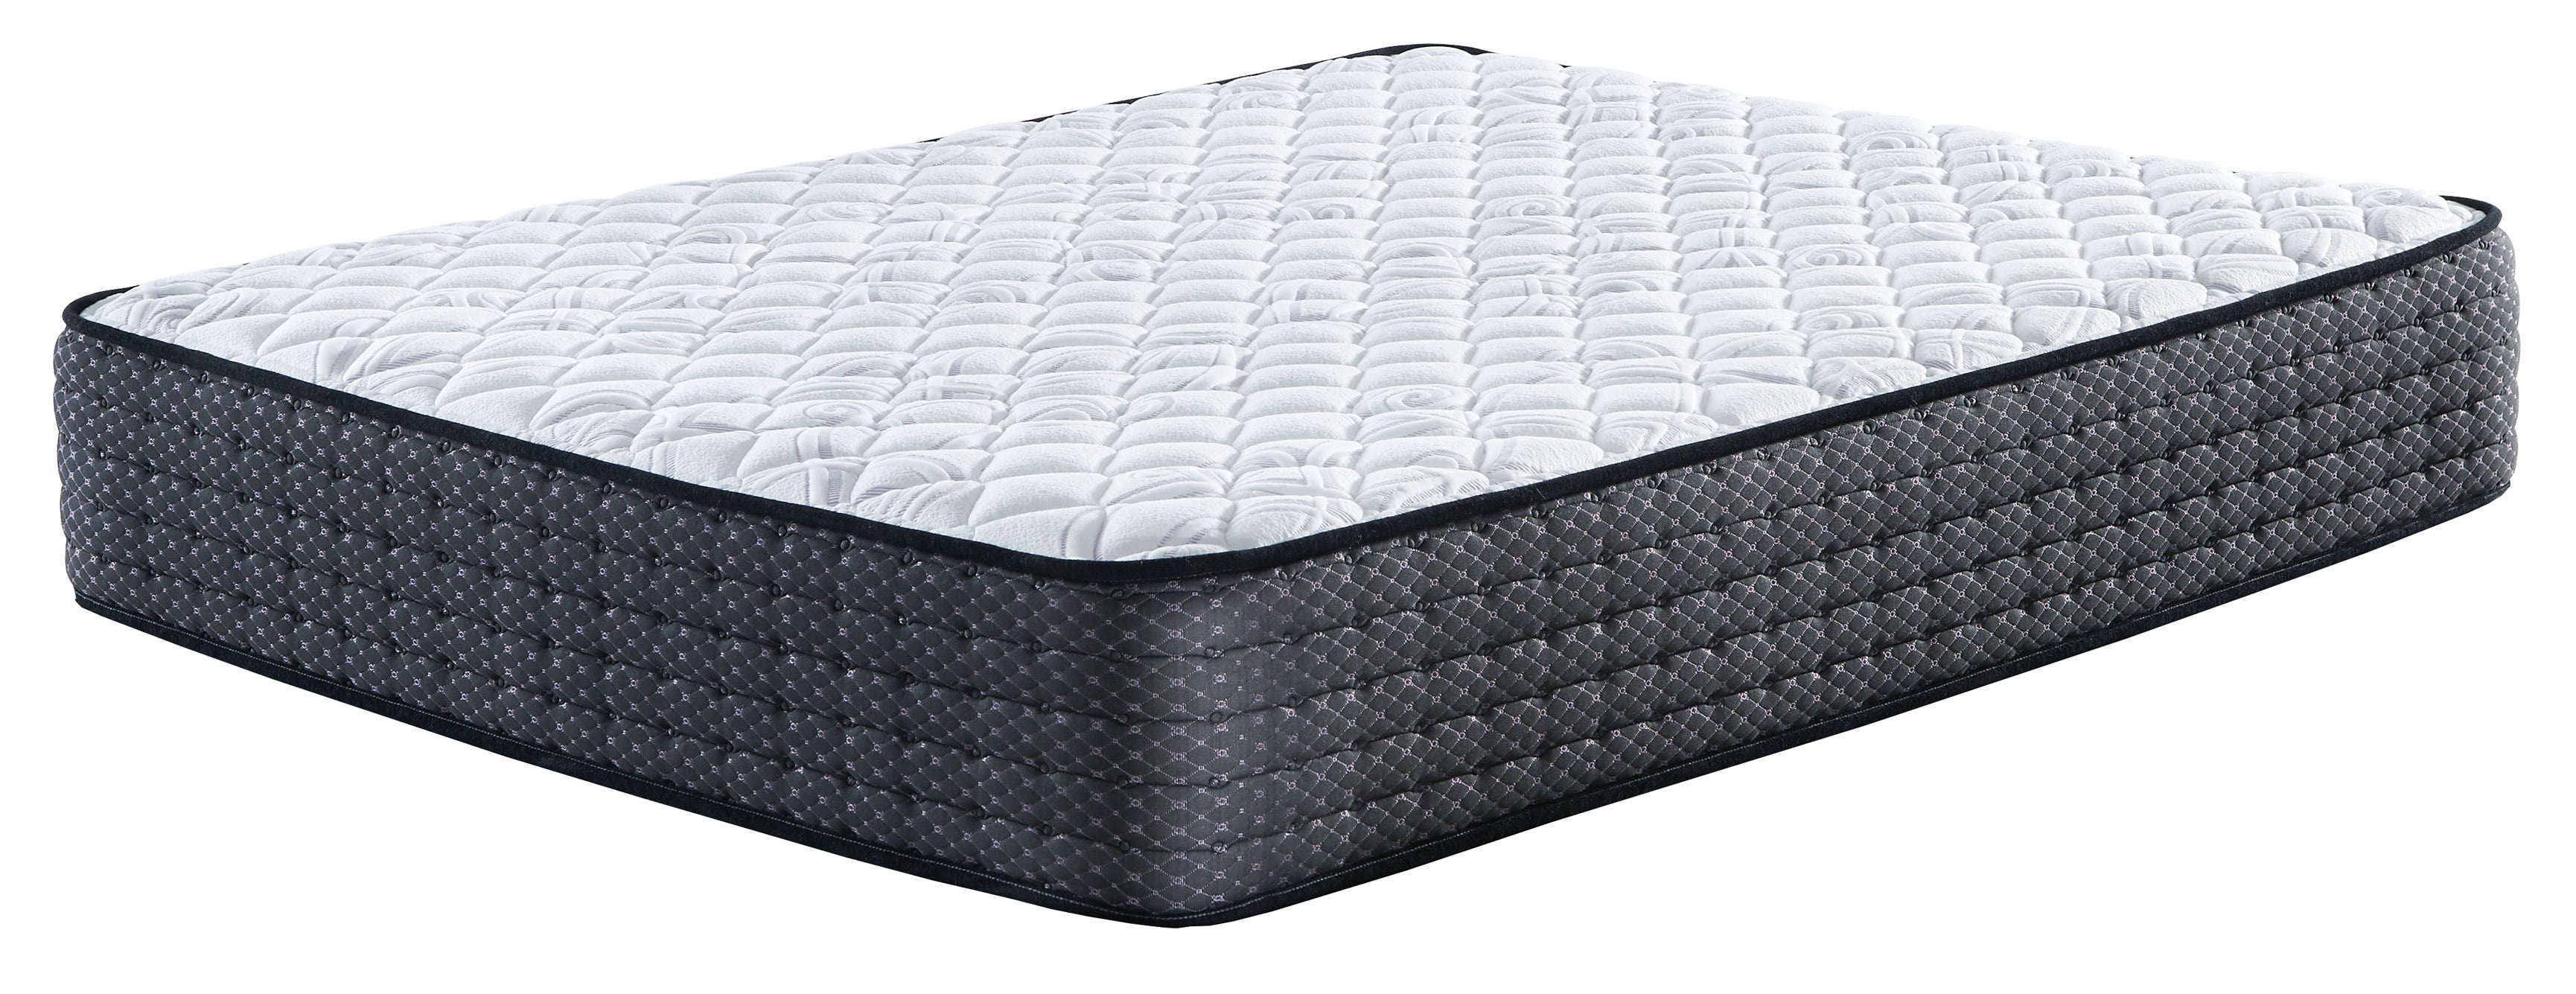 sierra sleep limited edition firm mattress reviews